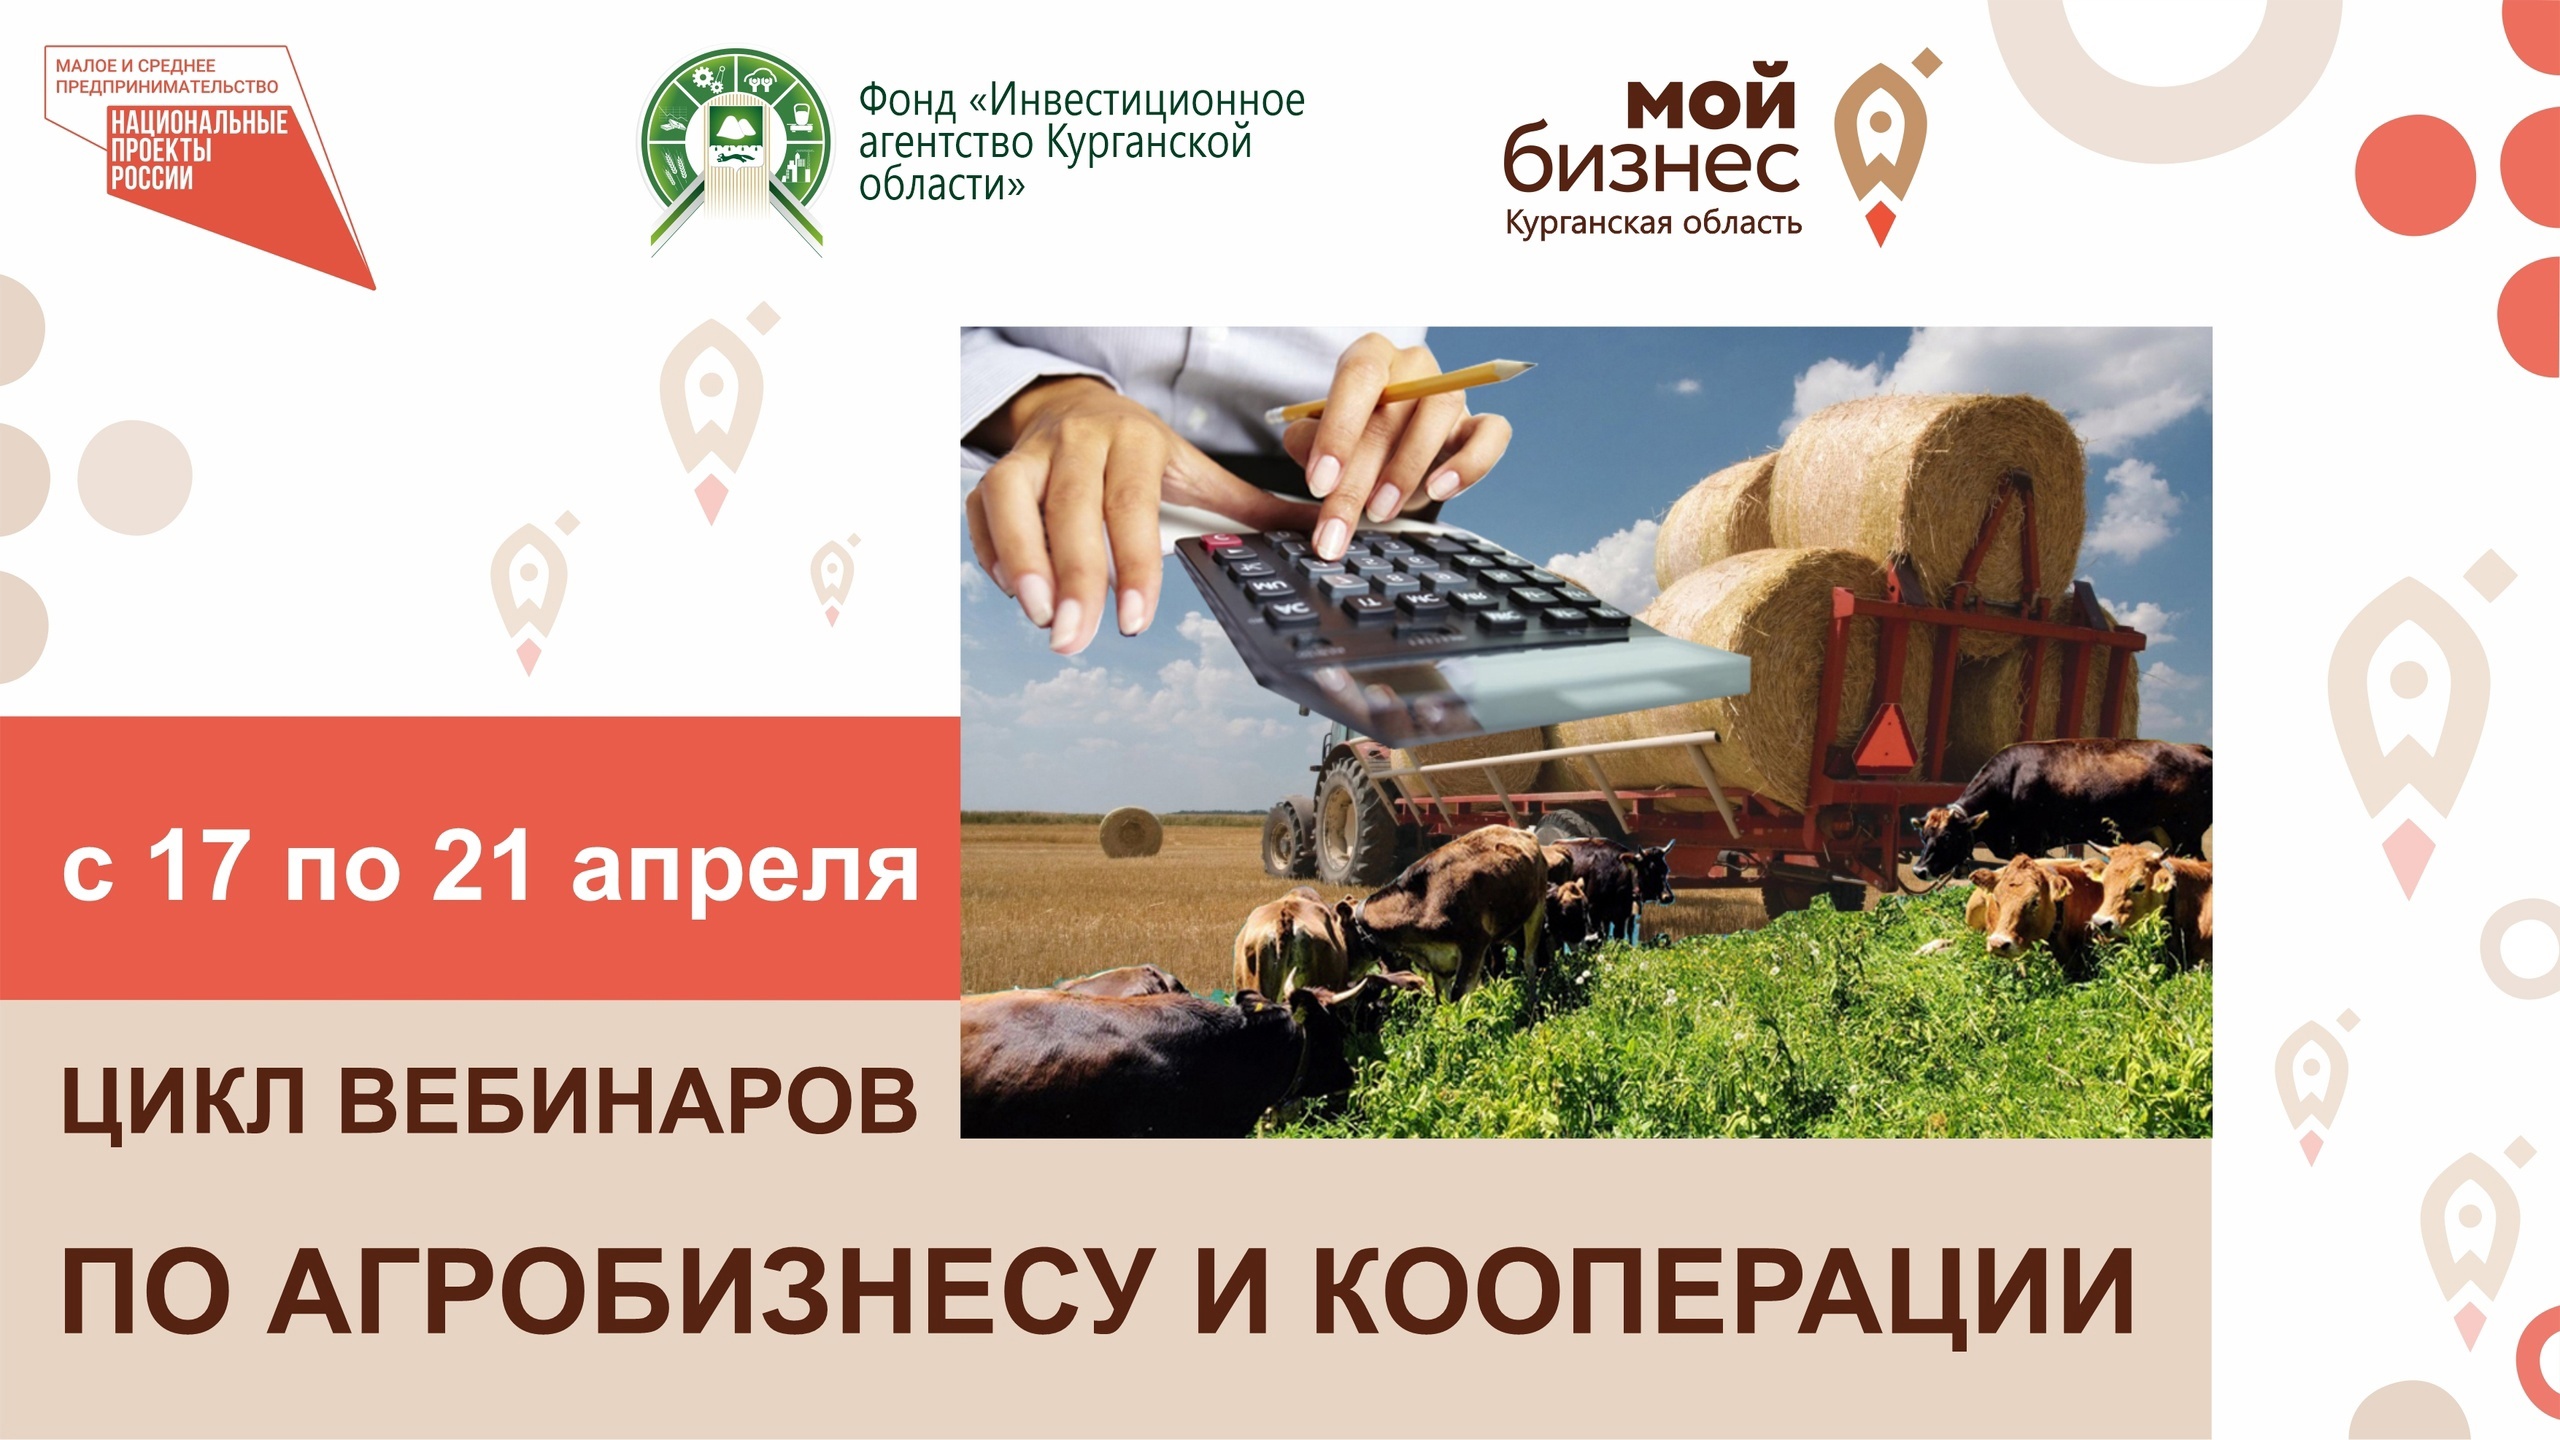 Цикл вебинаров на тему: «Агробизнес и сельхозкооперация».